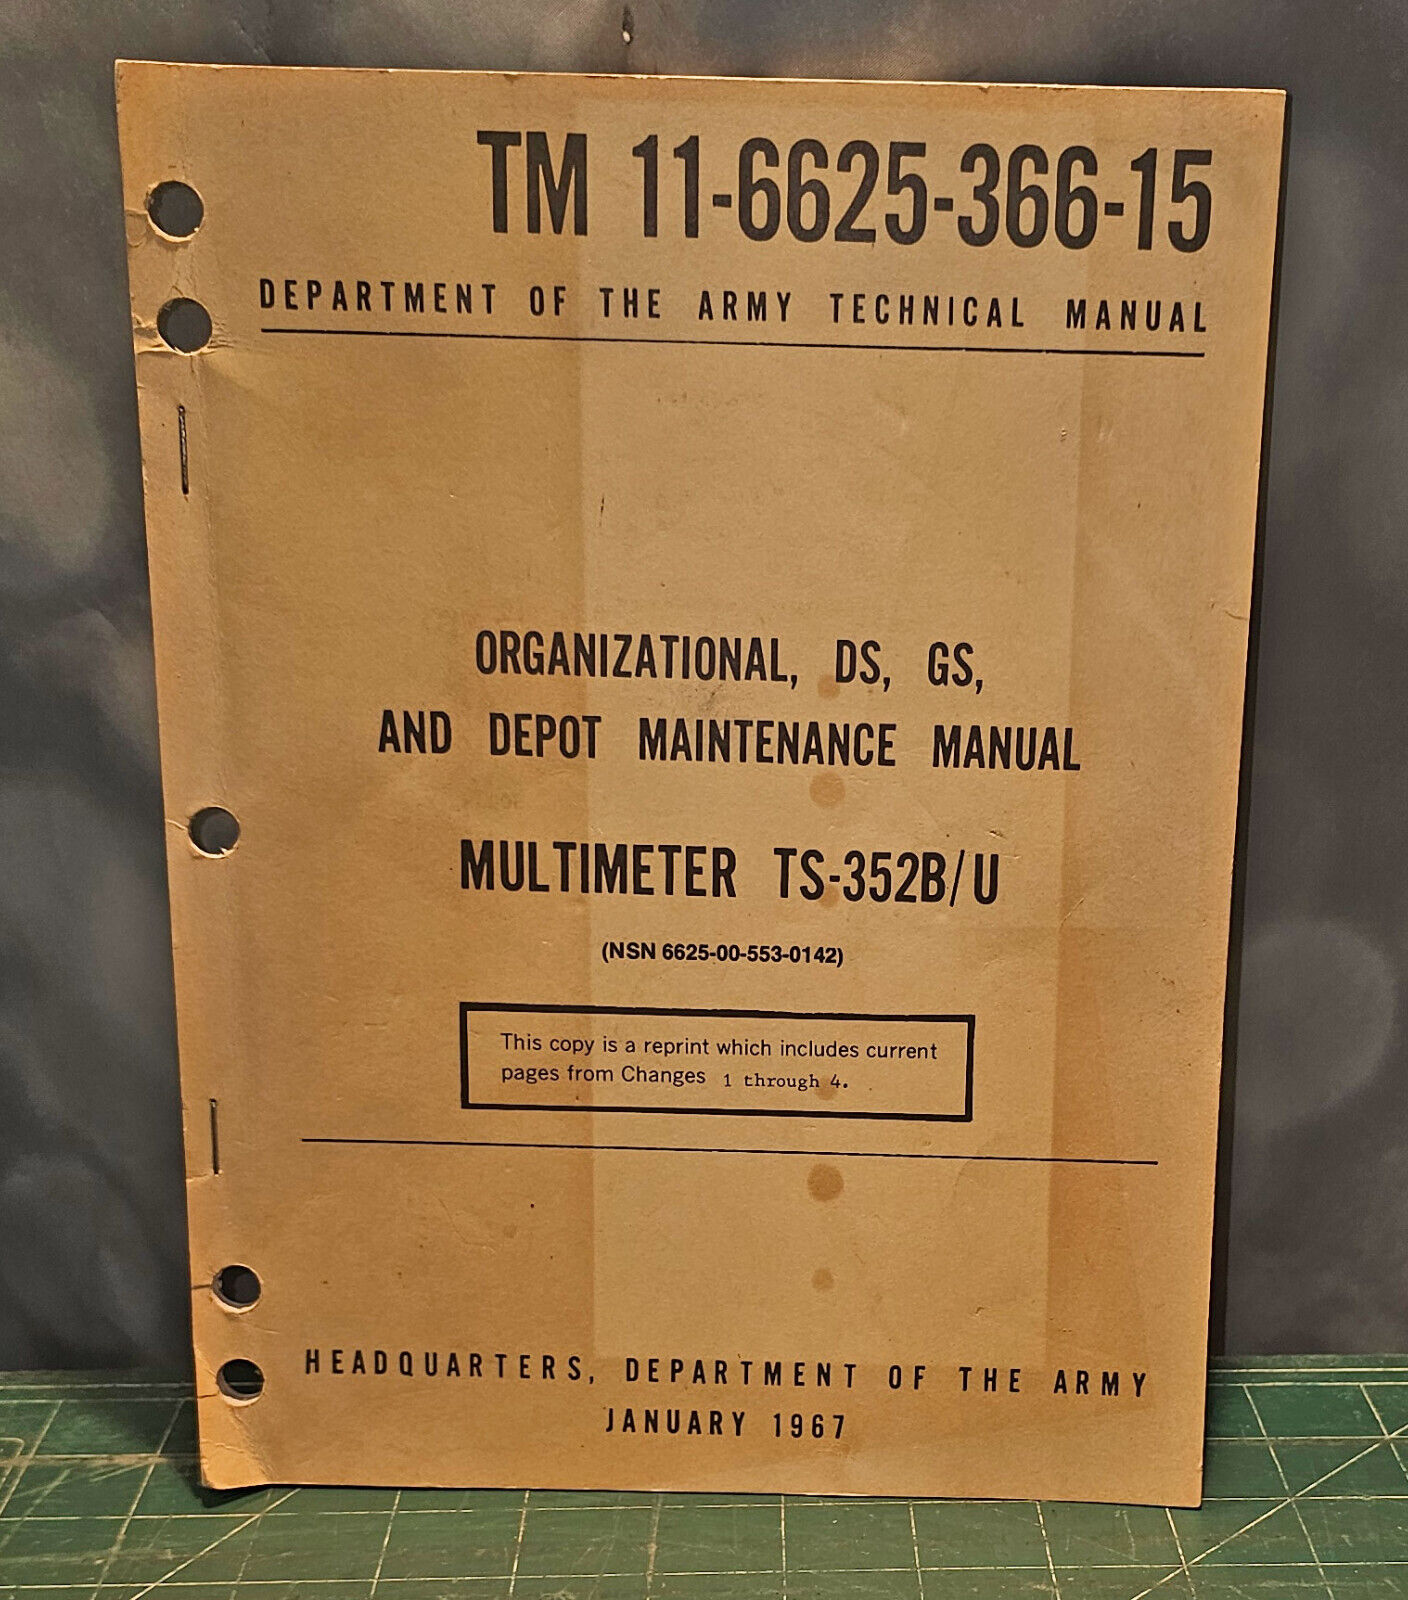 Army Maintenance Manual for Multimeter TS-352B/U (TM 11-6625-366-15)